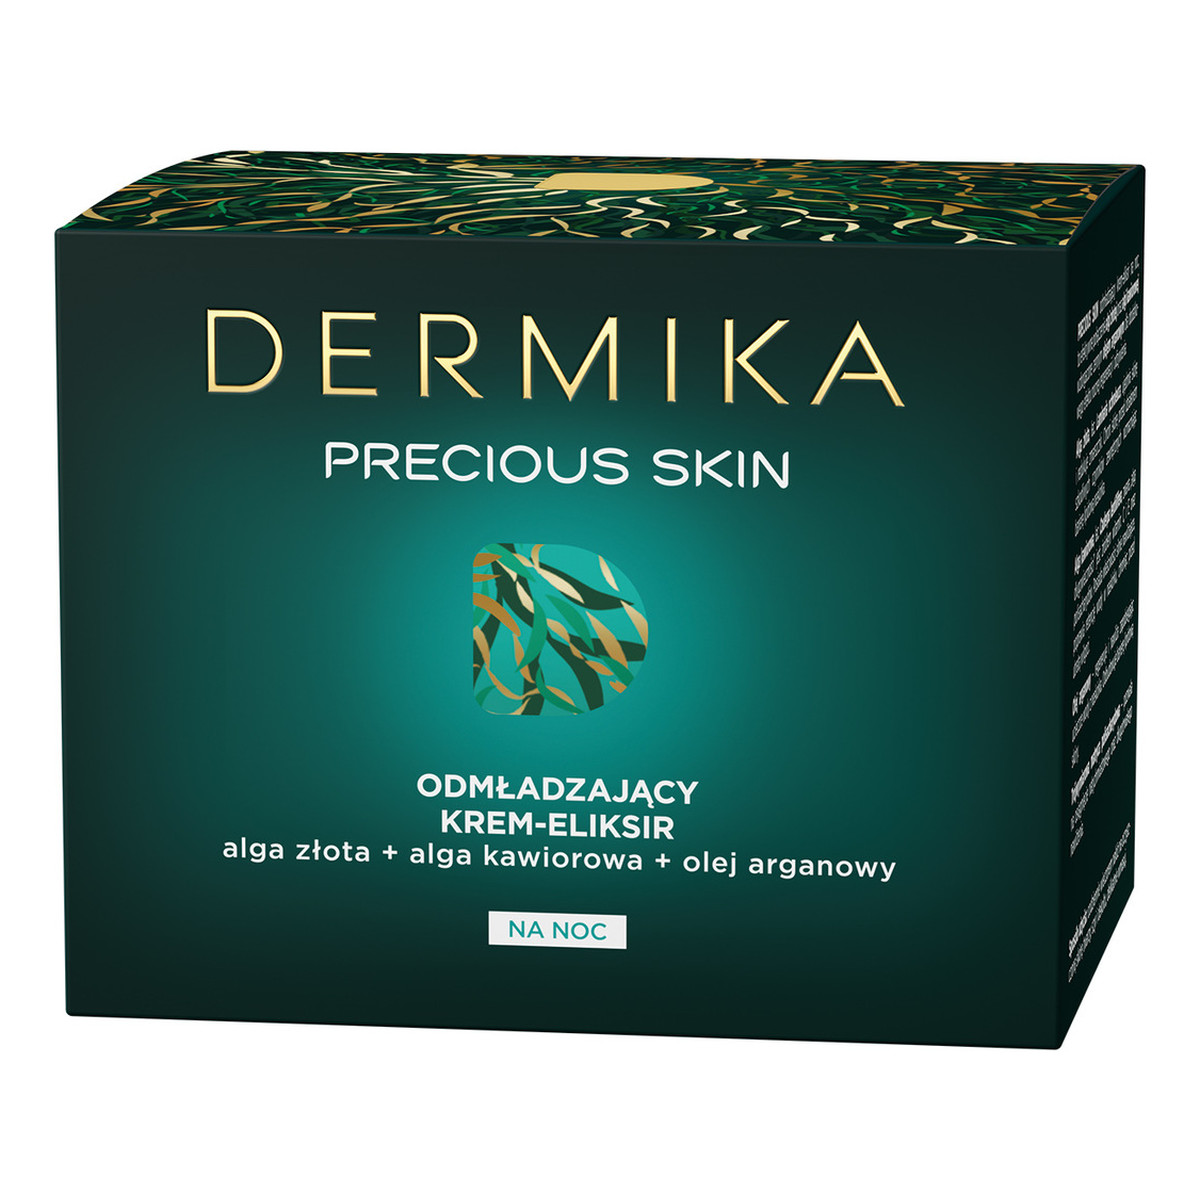 Dermika Precious Skin 50-70+ Krem-eliksir odmładzający na noc 50ml